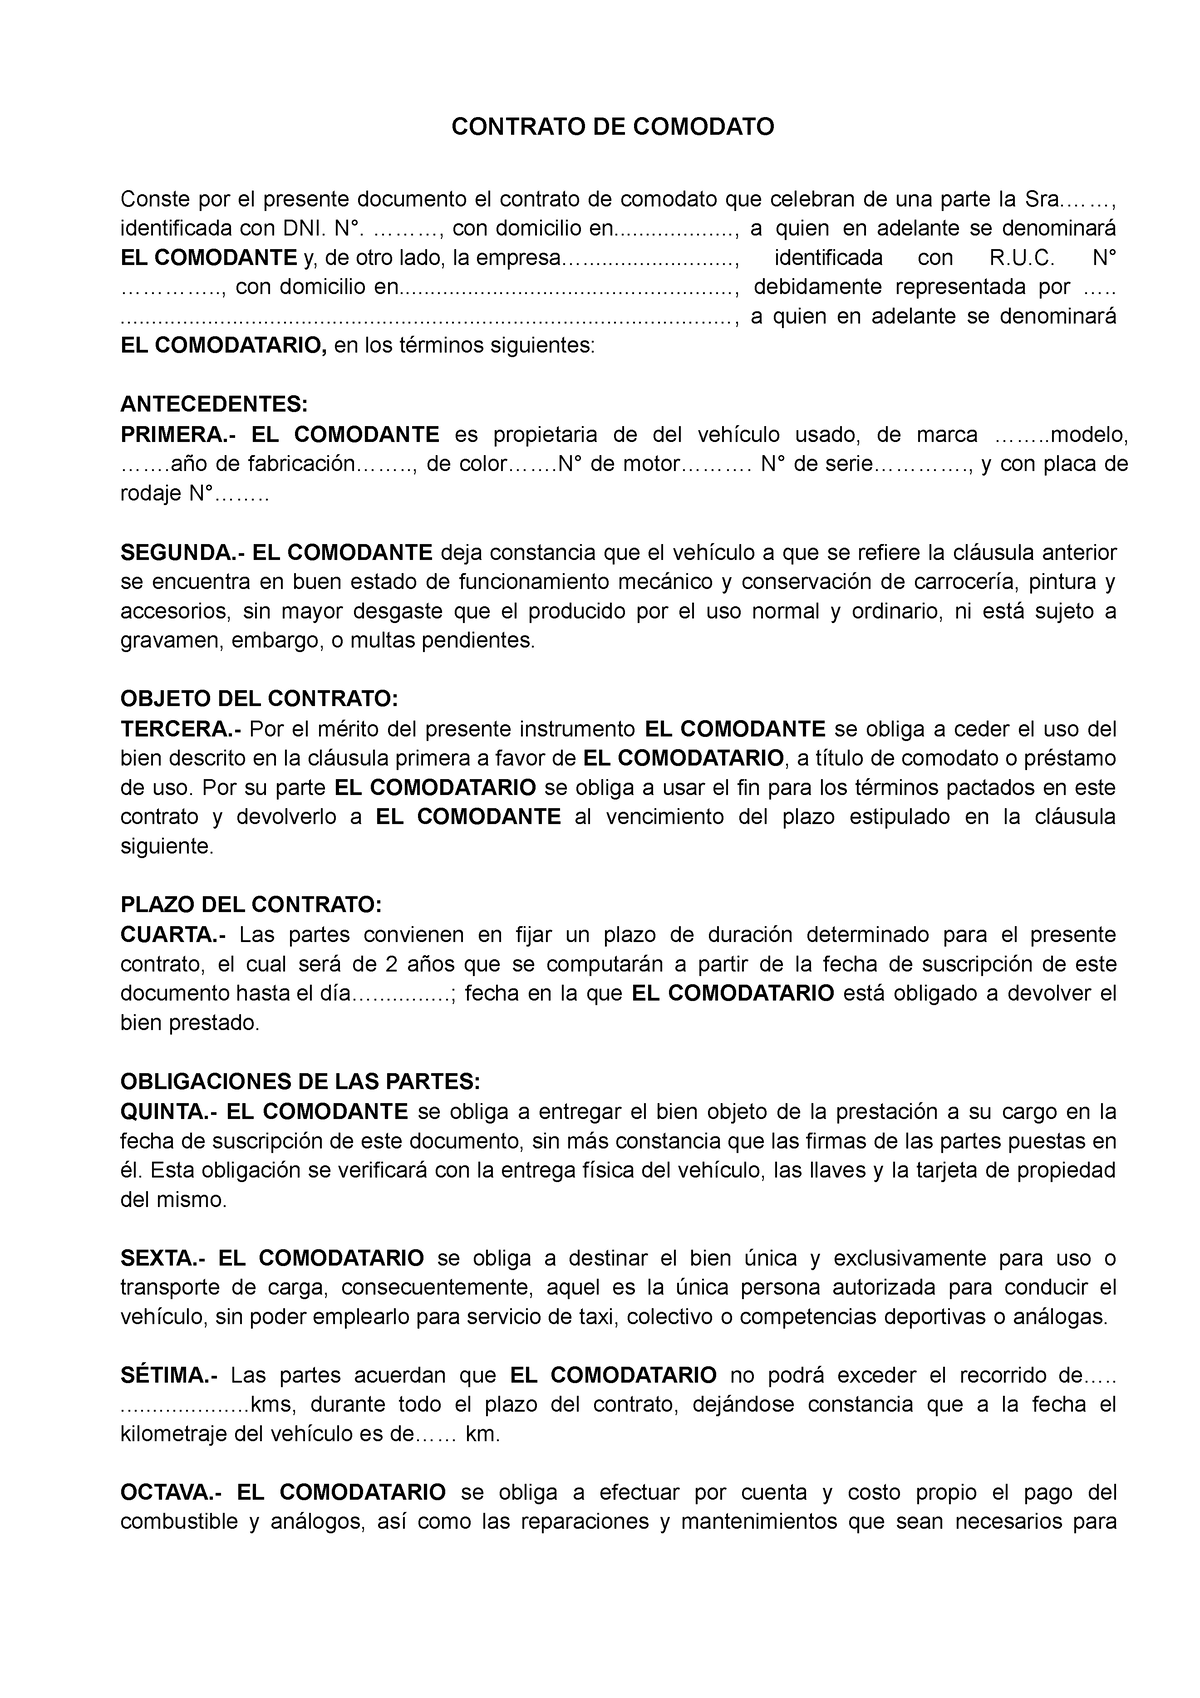 Contrato de comodato vehiculo - CONTRATO DE COMODATO Conste por el presente  documento el contrato de - Studocu